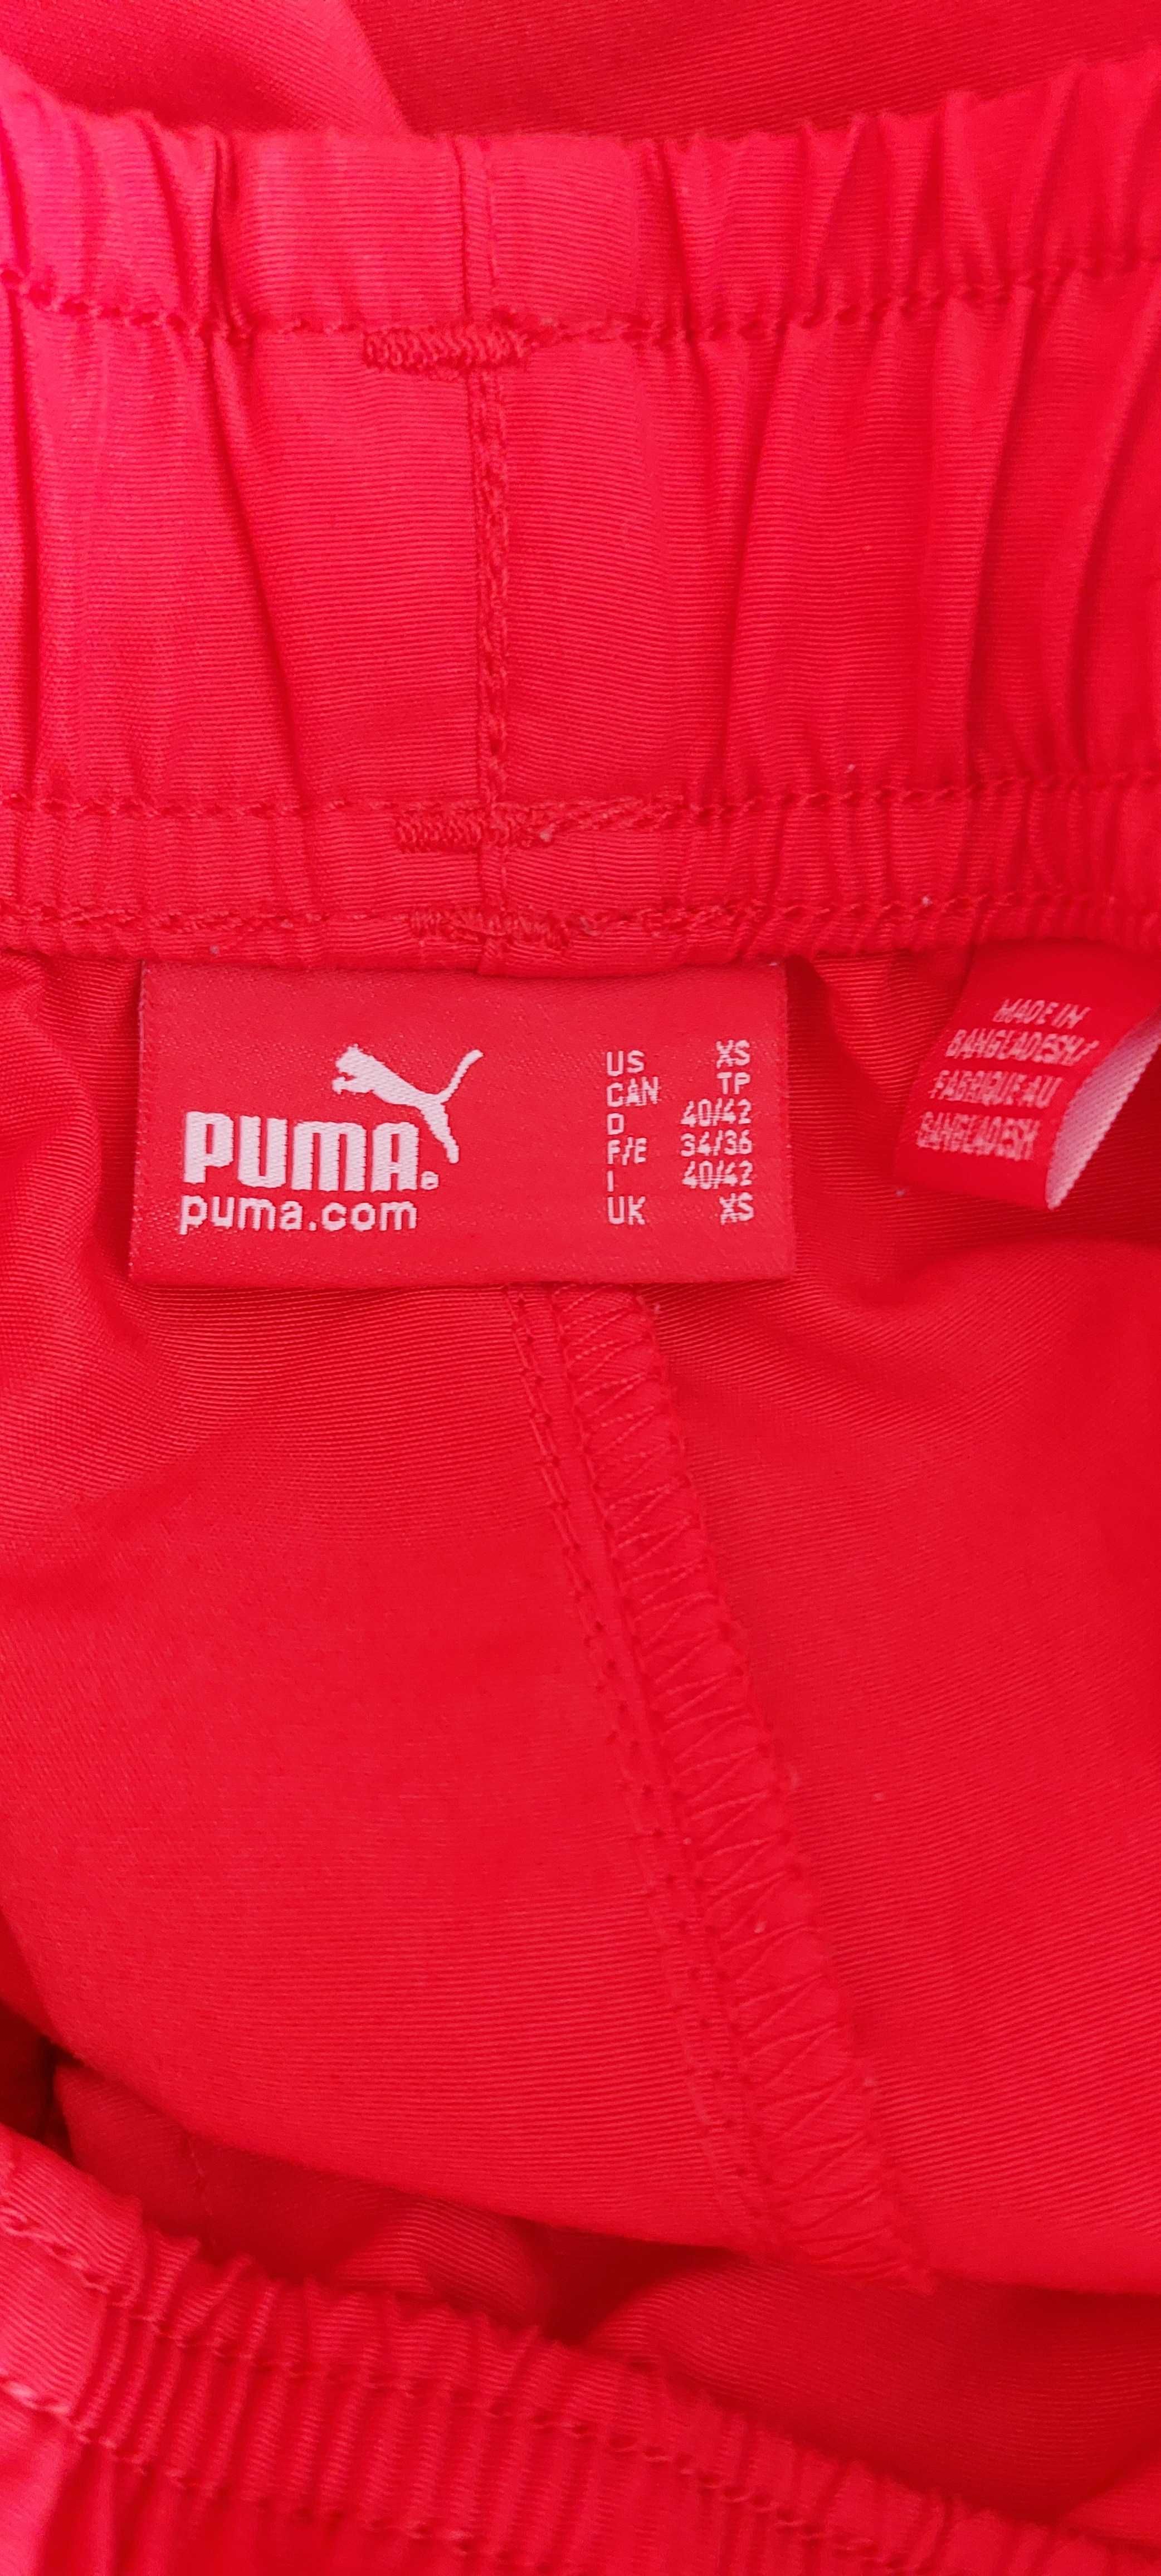 Дамски спортен панталон Puma, размер XS.